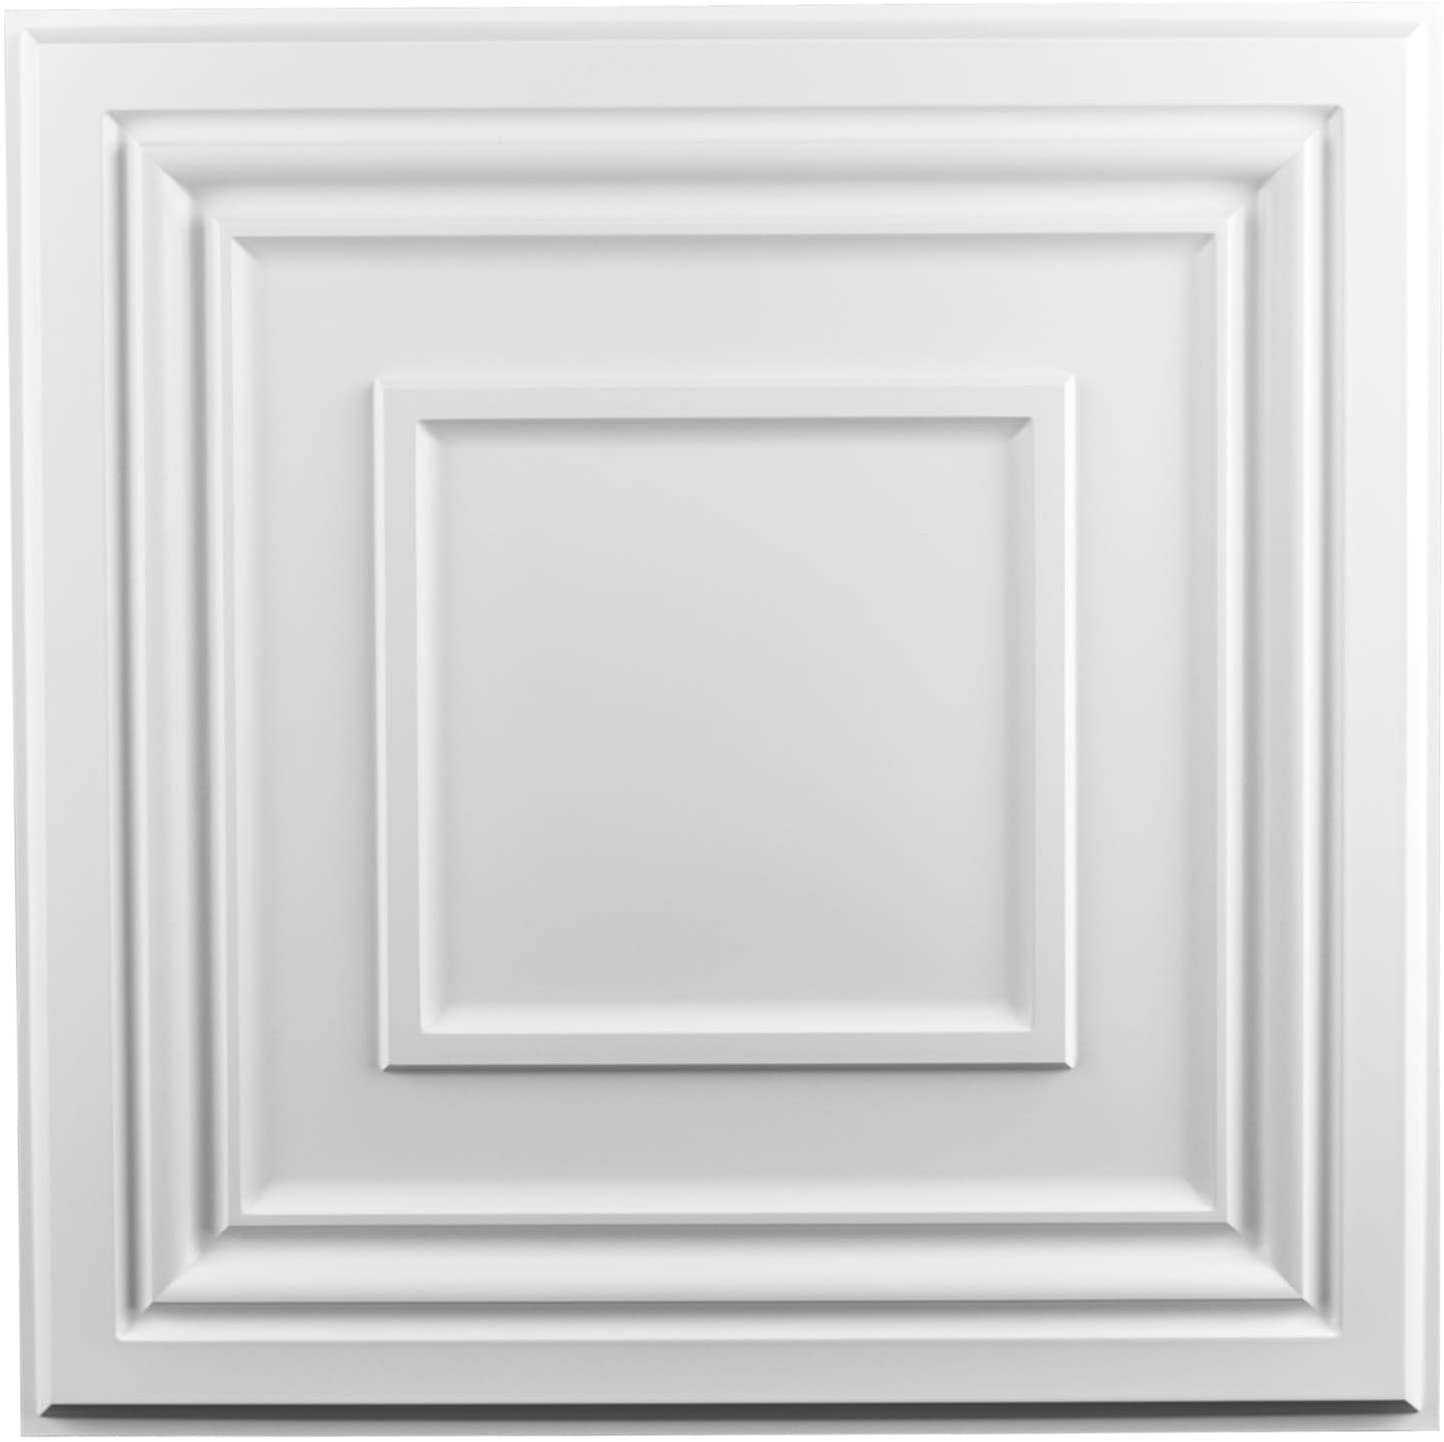 A10901P12 - Art3d Decorative Drop Ceiling Tile 2x2 Pack of 12pcs, Glue up Ceiling Panel Square Relief